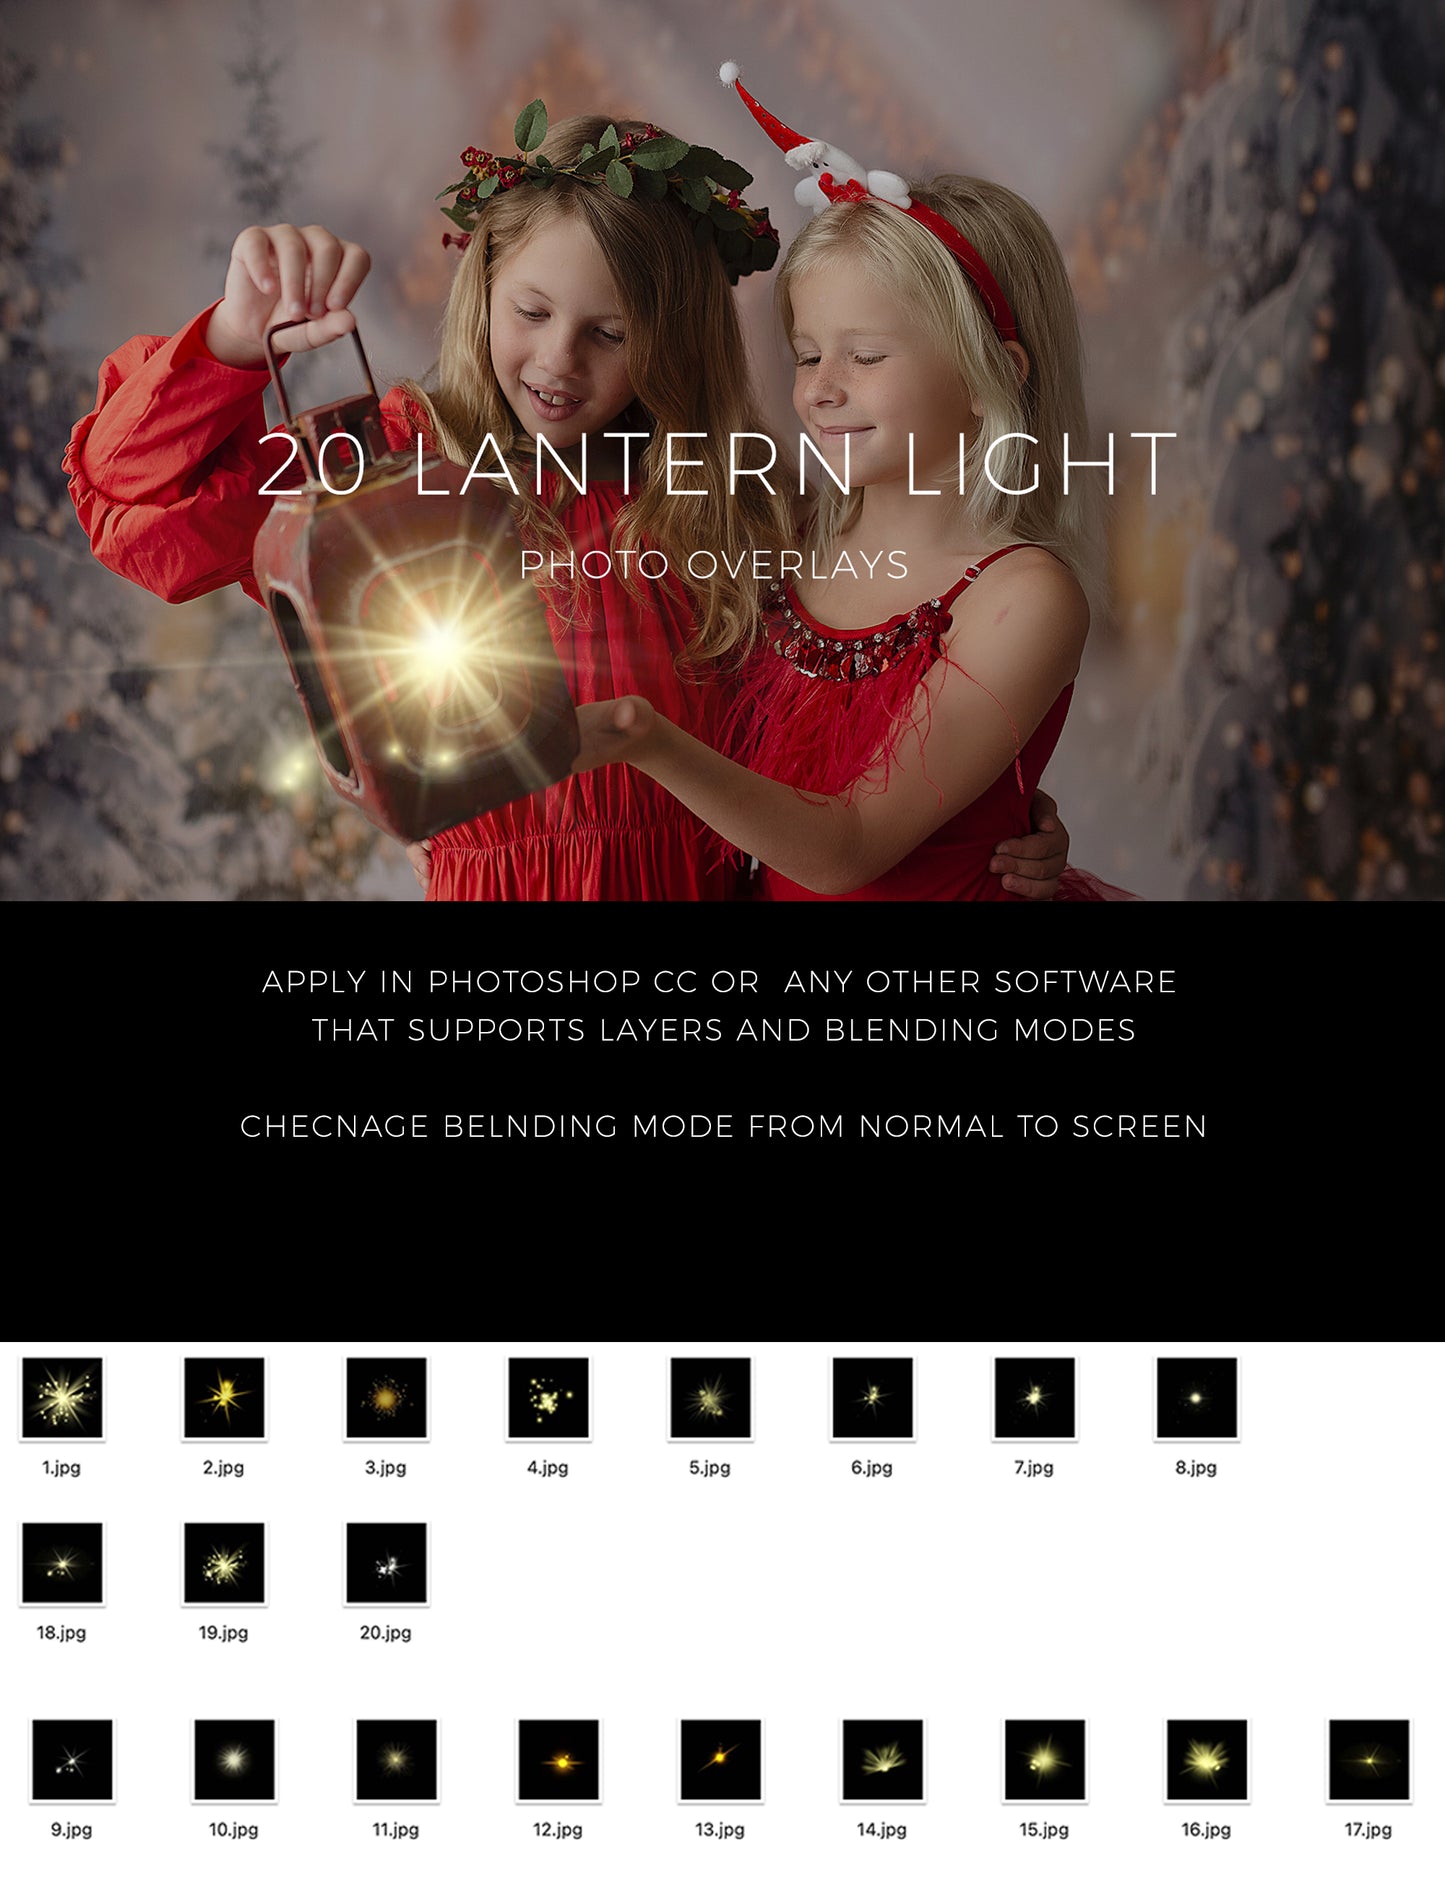 Lantern Light Photo Overlays